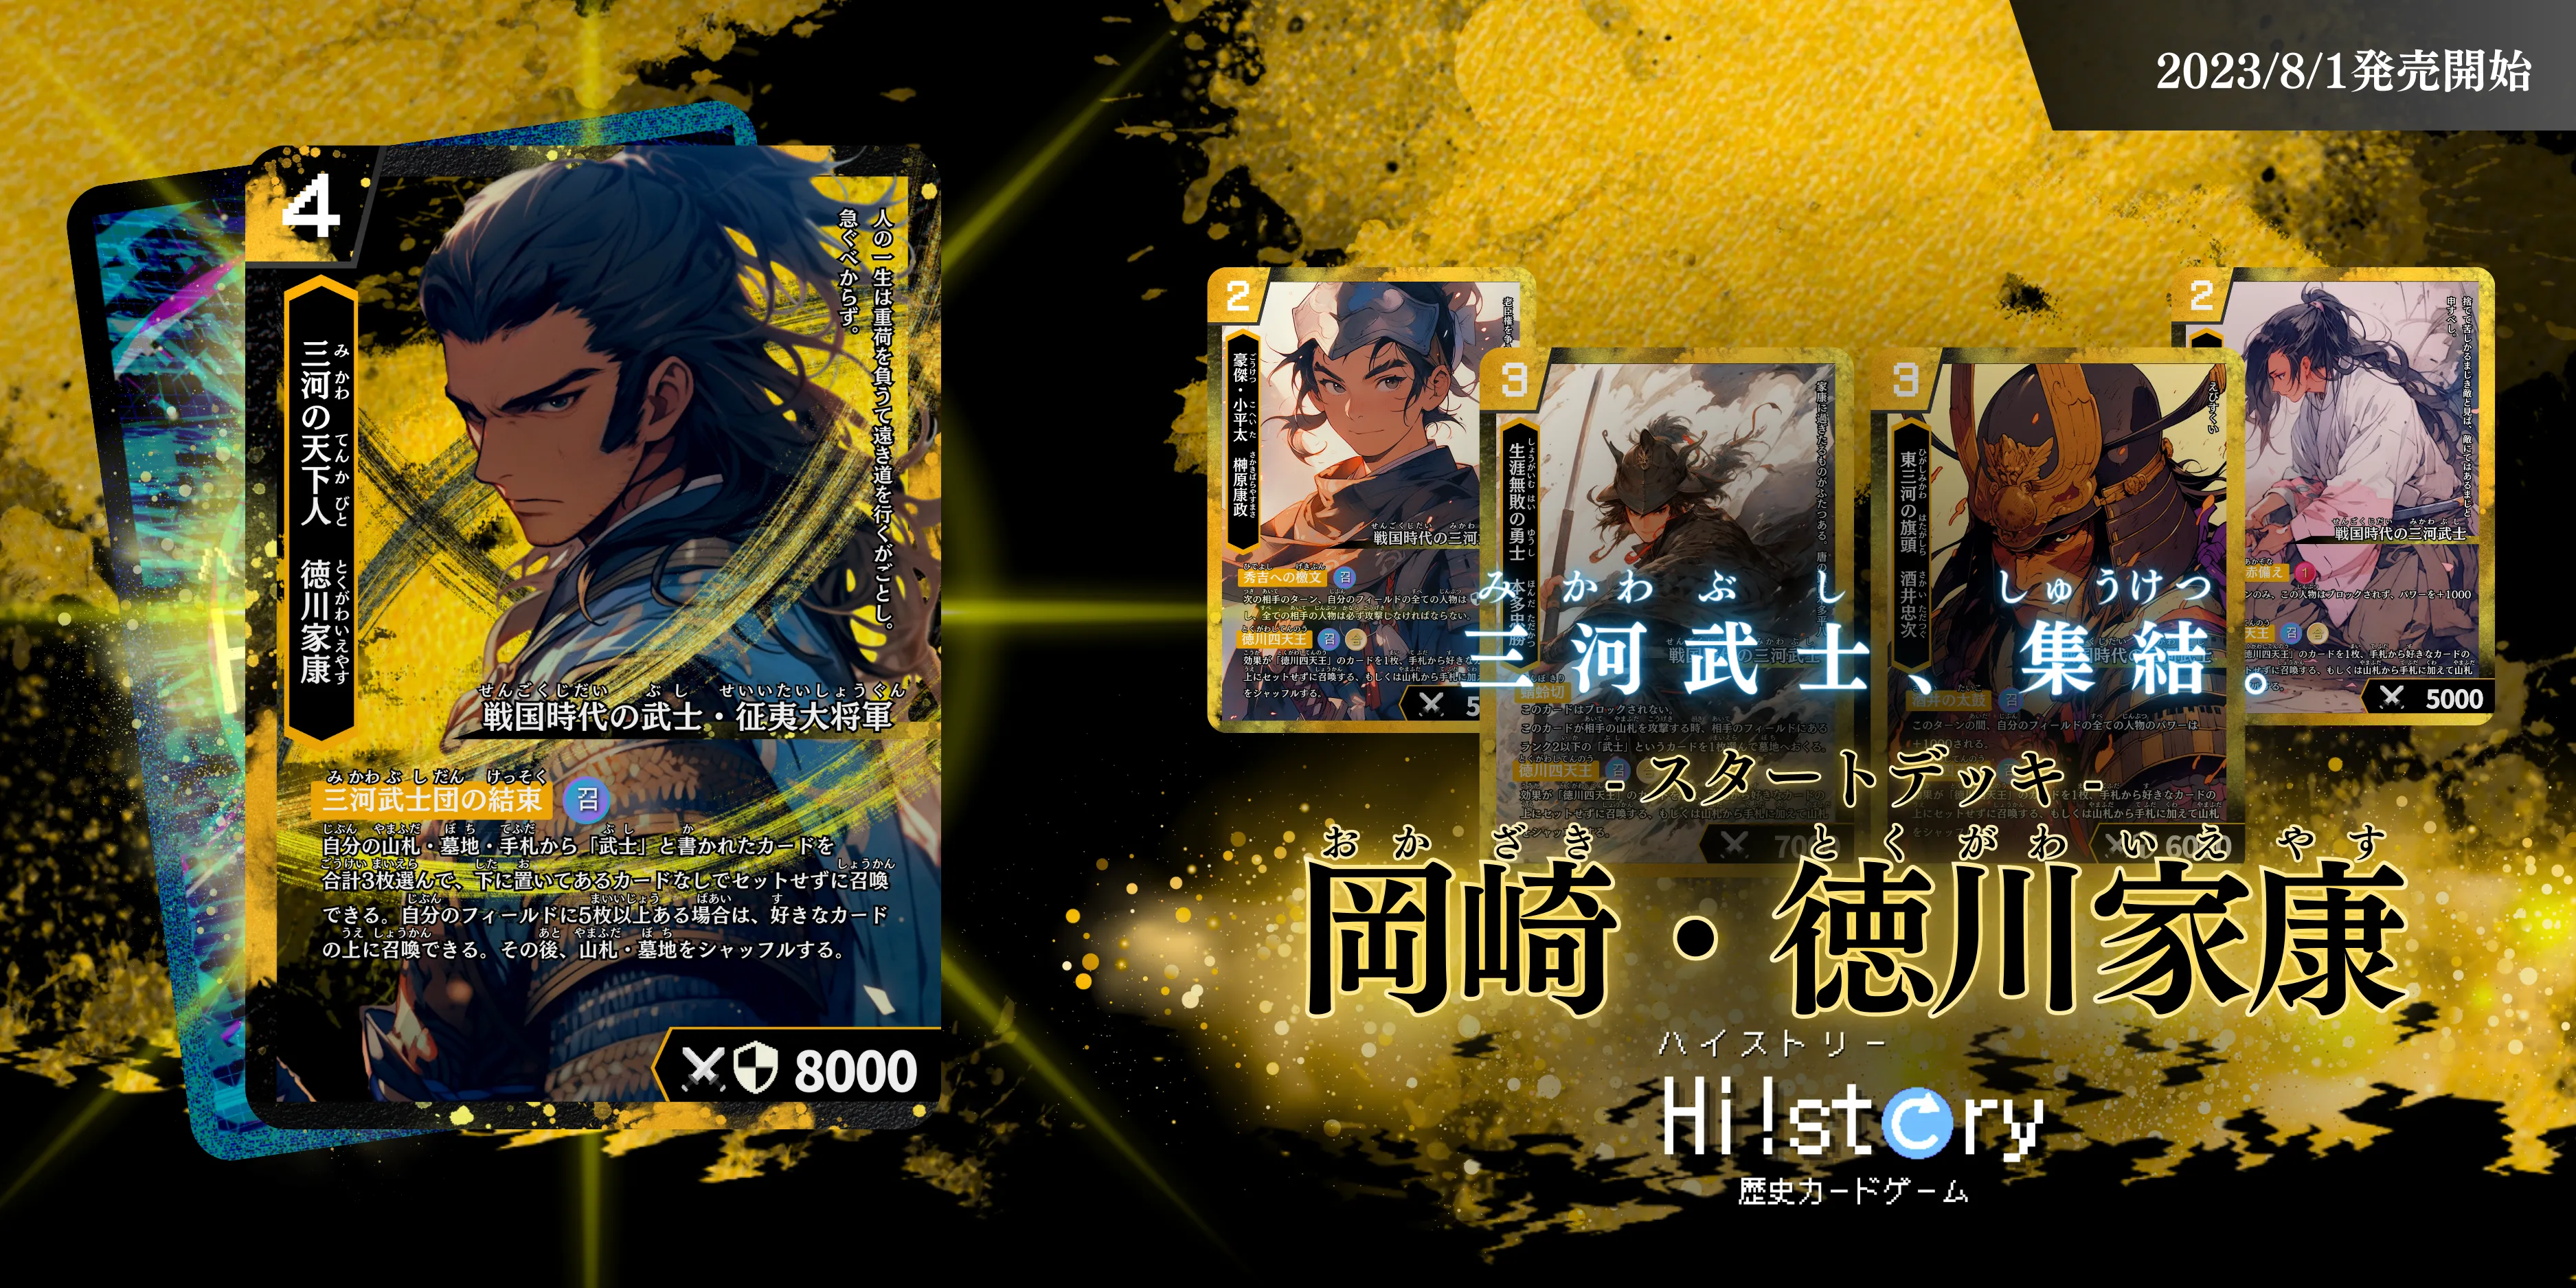 歴史トレーディングカードゲームHi!story（ハイスト）のシリーズの一つ「岡崎・徳川家康」のサムネイル画像